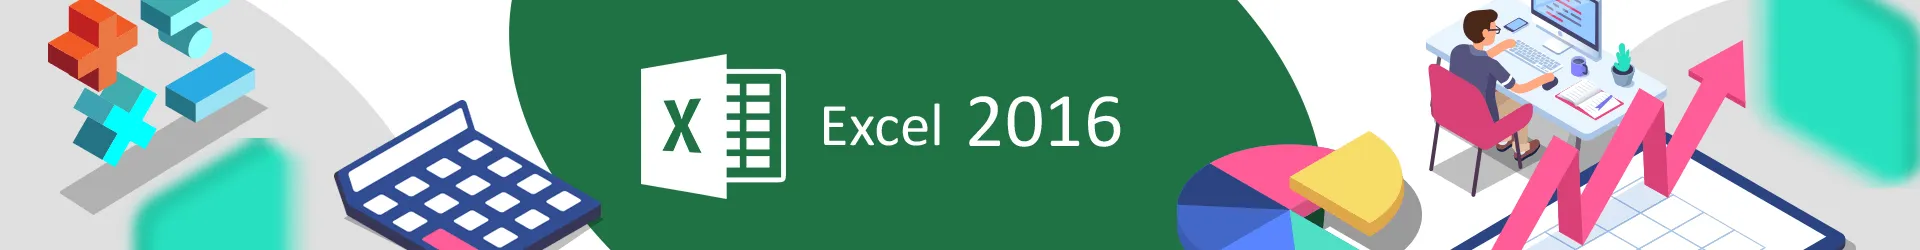 Formation Excel 2016 : s’exercer aux fonctionnalités avancées 
Cours et simulations Elearning avec tutorat